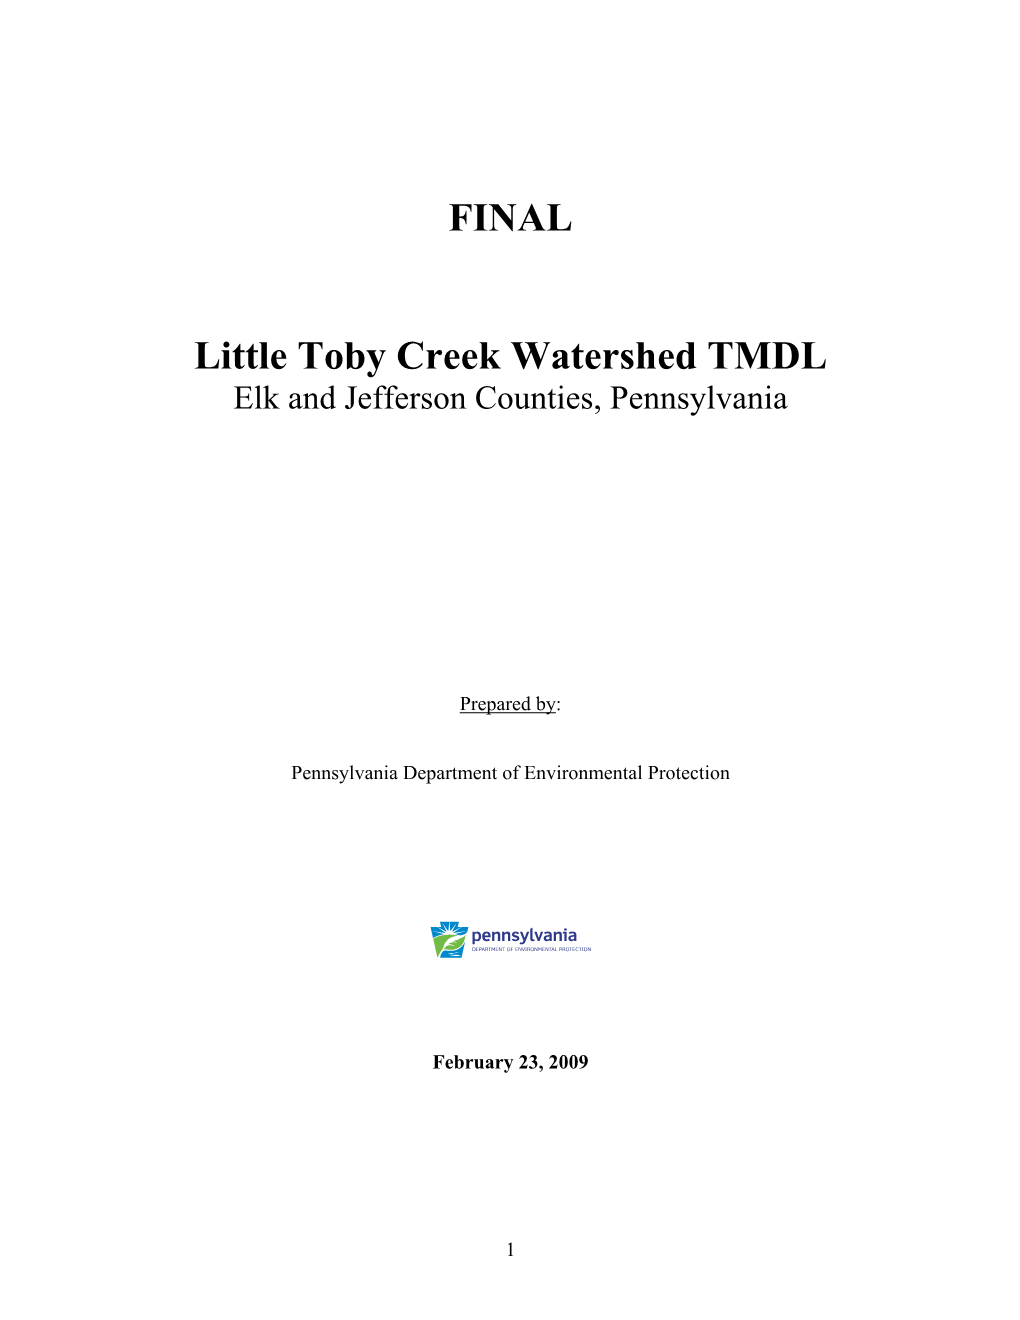 FINAL Little Toby Creek Watershed TMDL